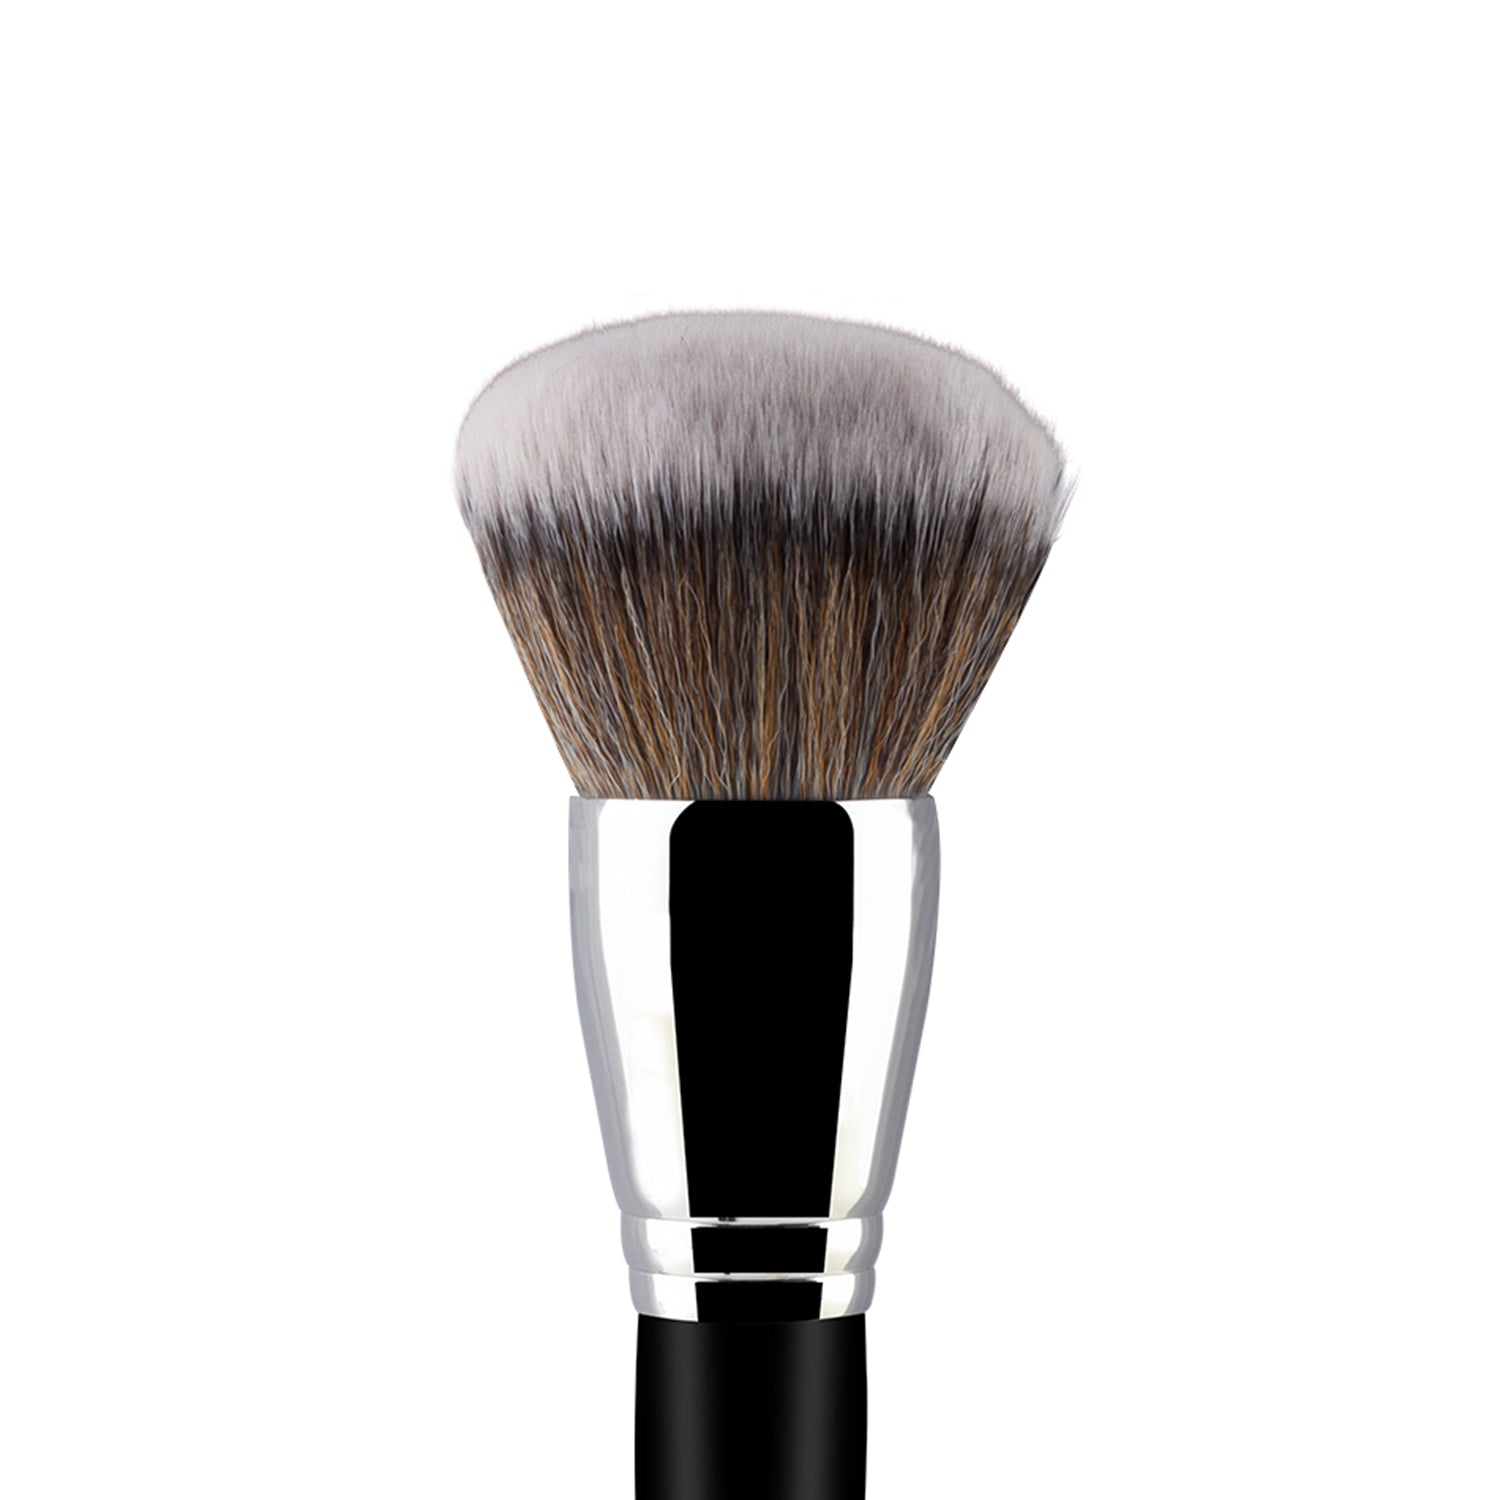 PAC Cosmetics Powder Brush 251